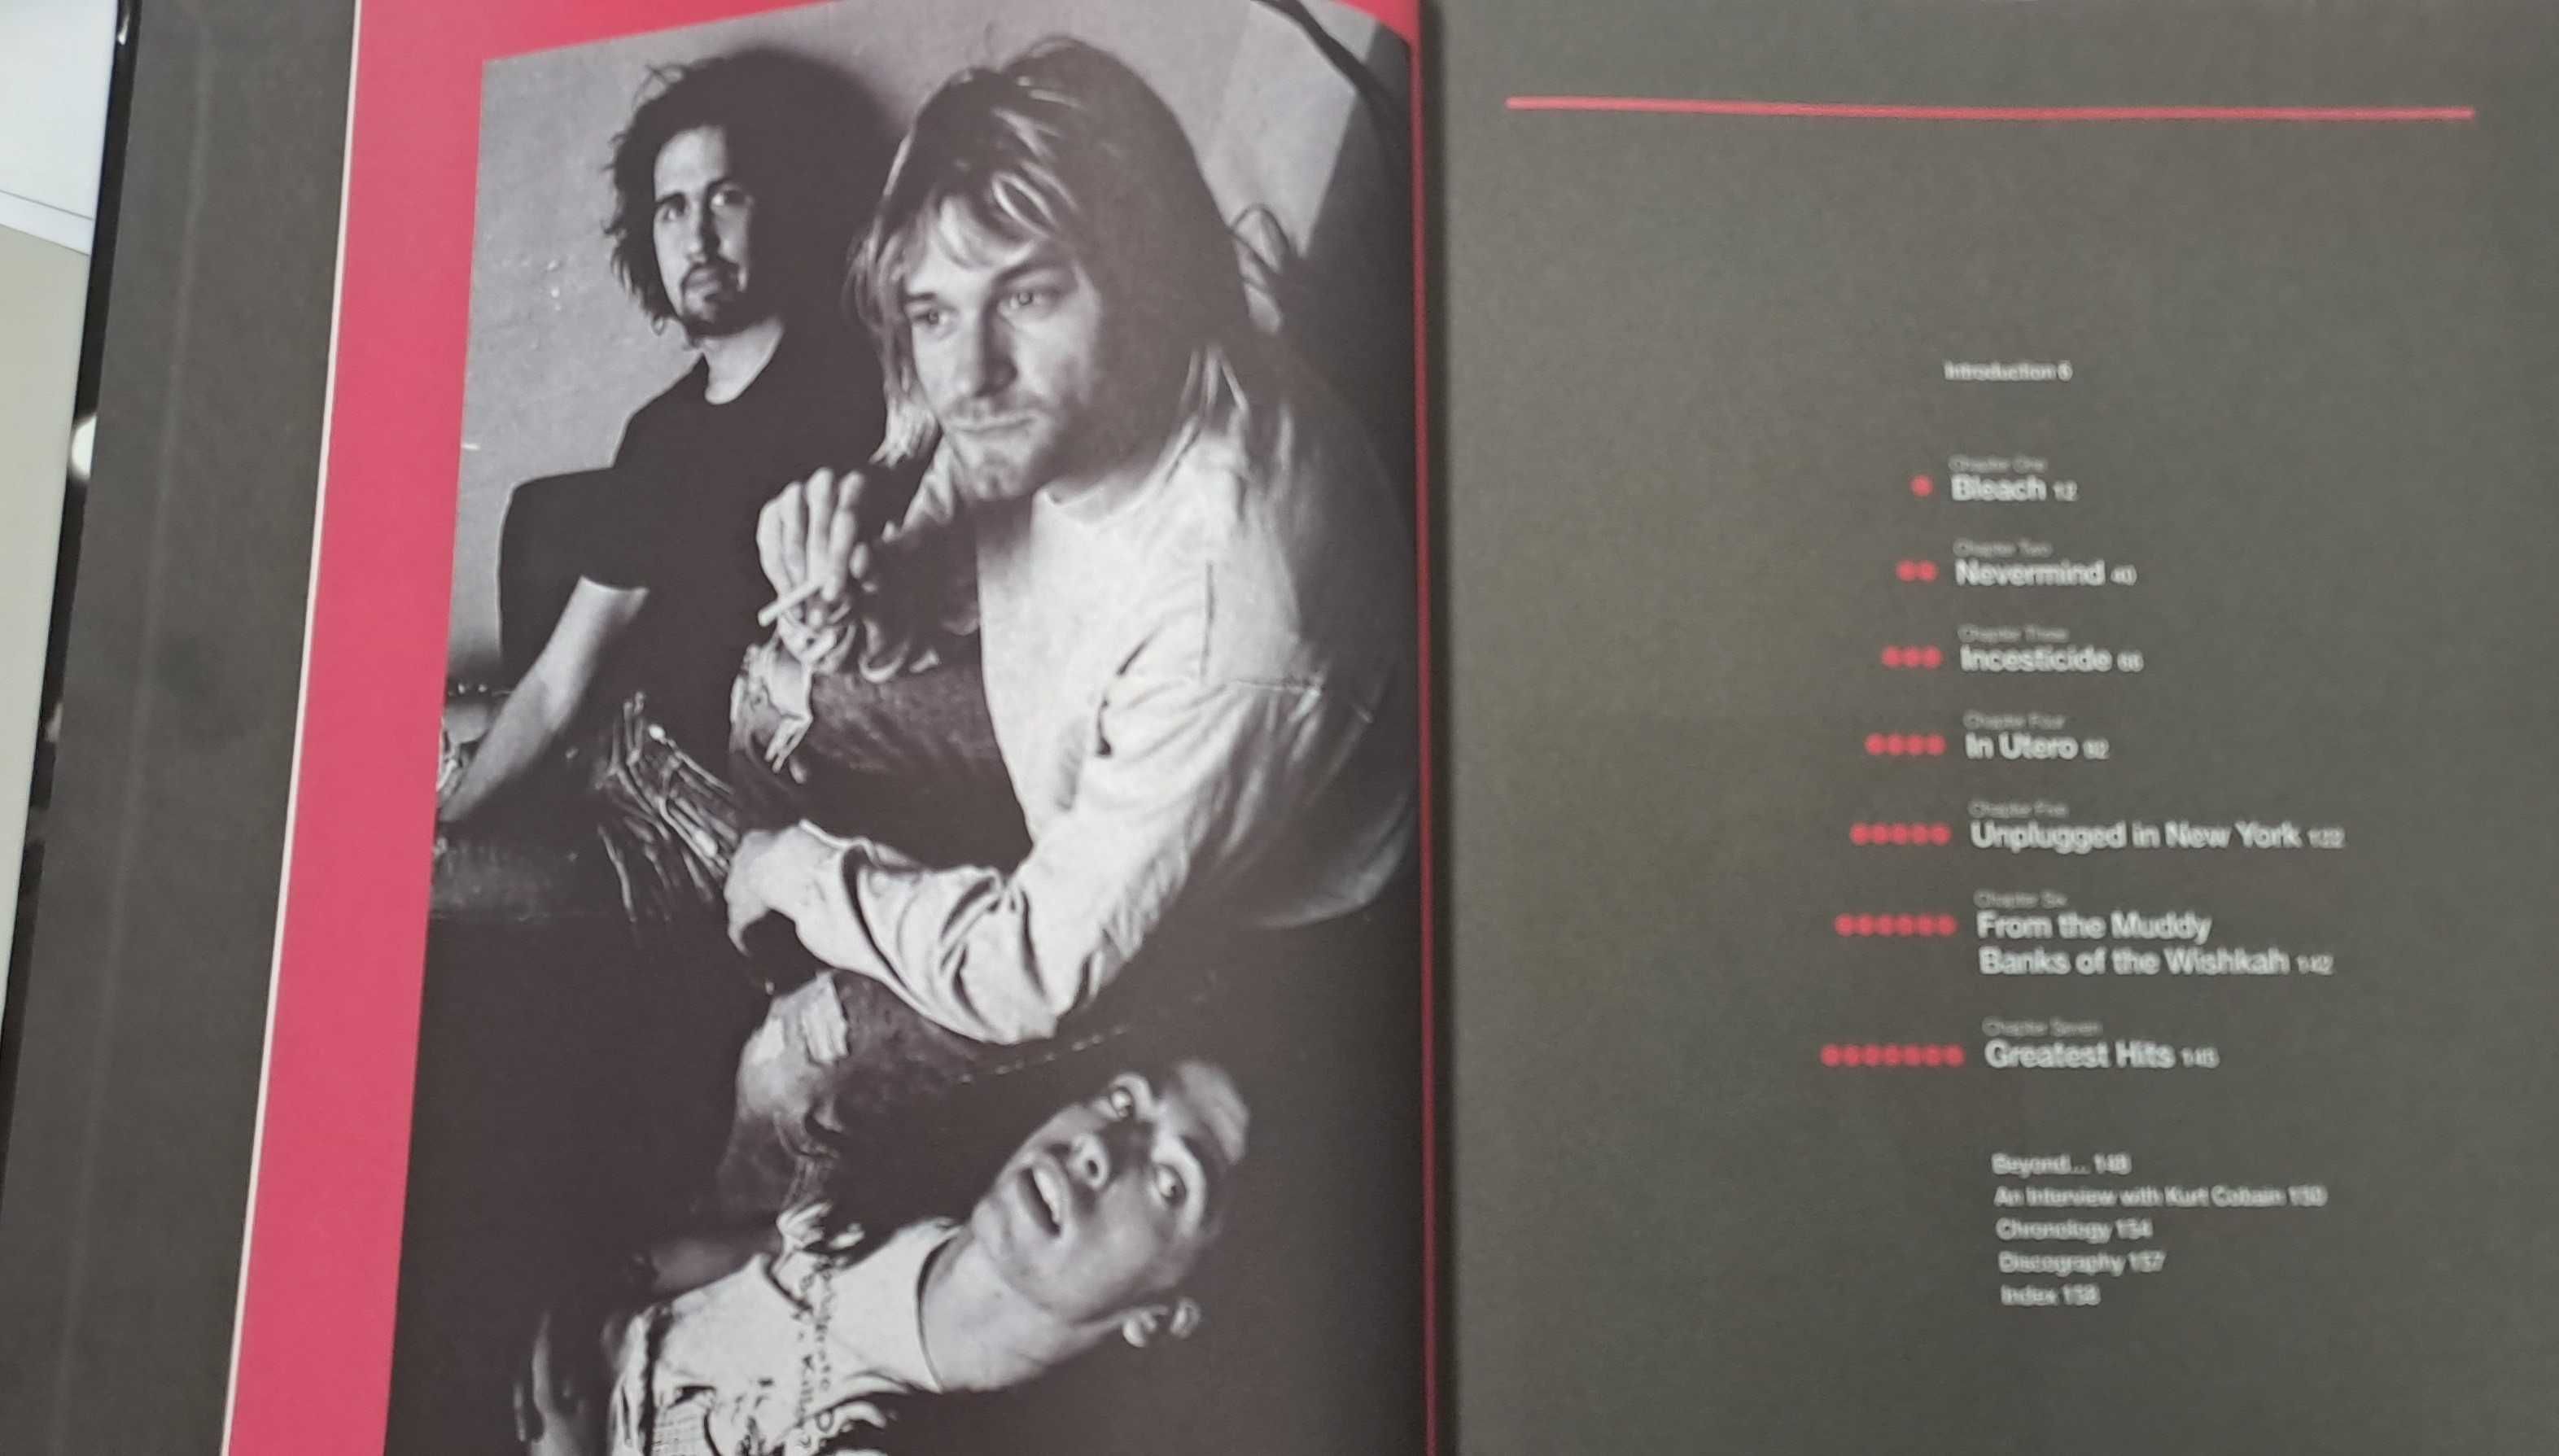 Livro dos Nirvana (A História das canções)